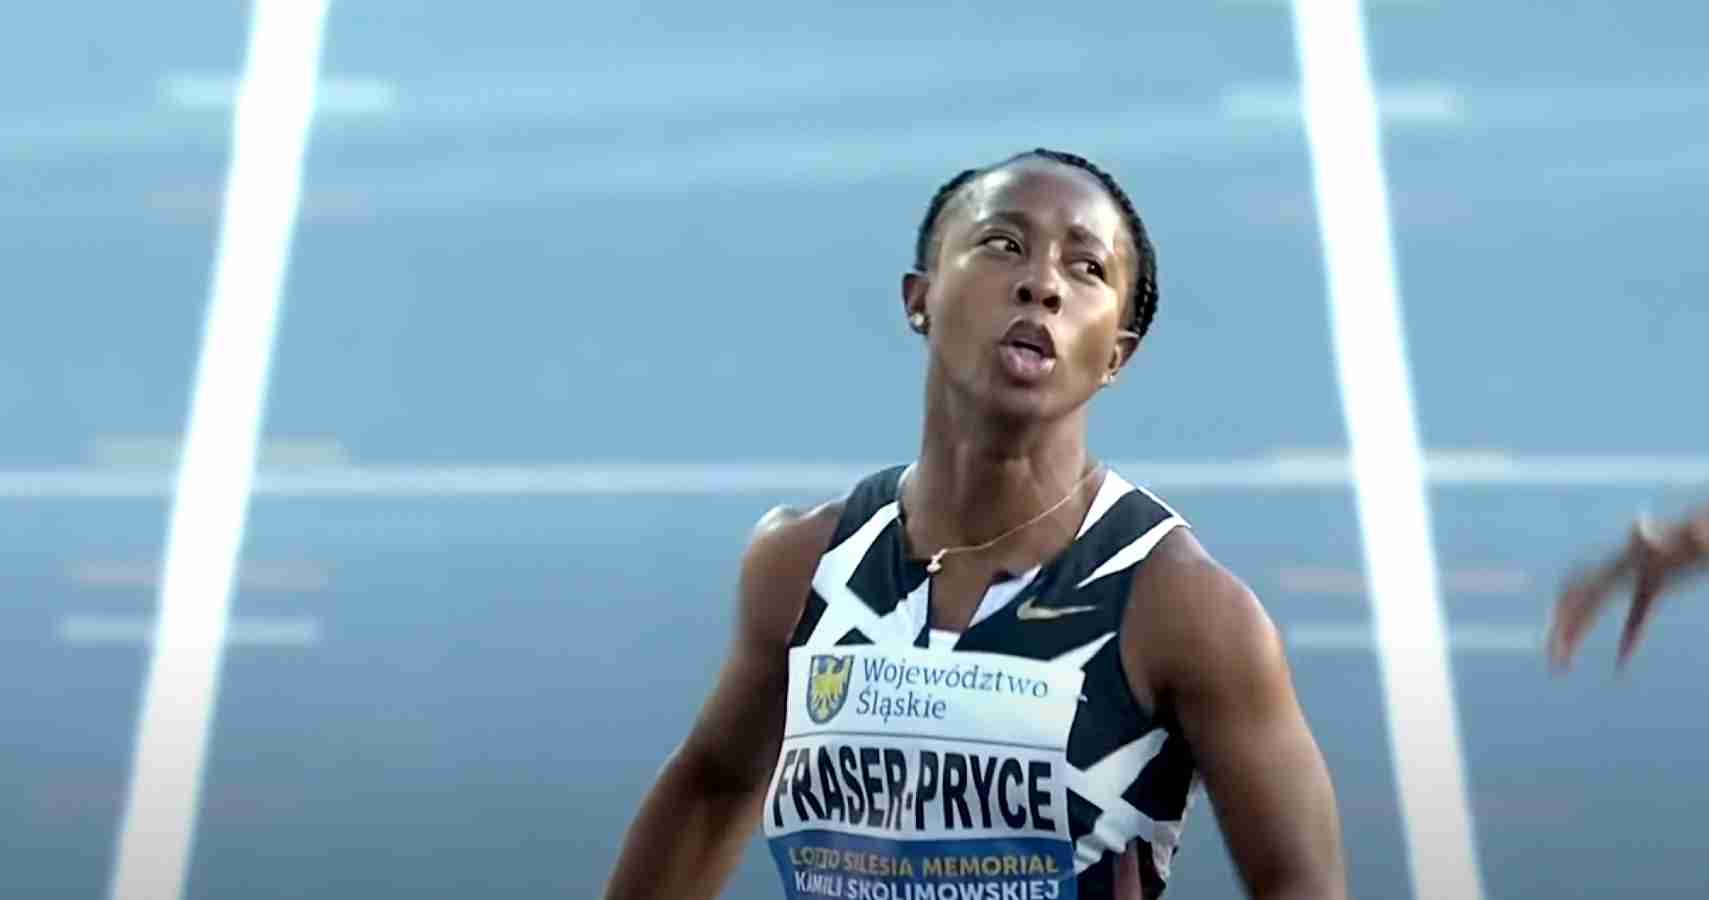 Watch video: Fraser-Pryce runs 10.81 at Kamila Skolimowska Memorial